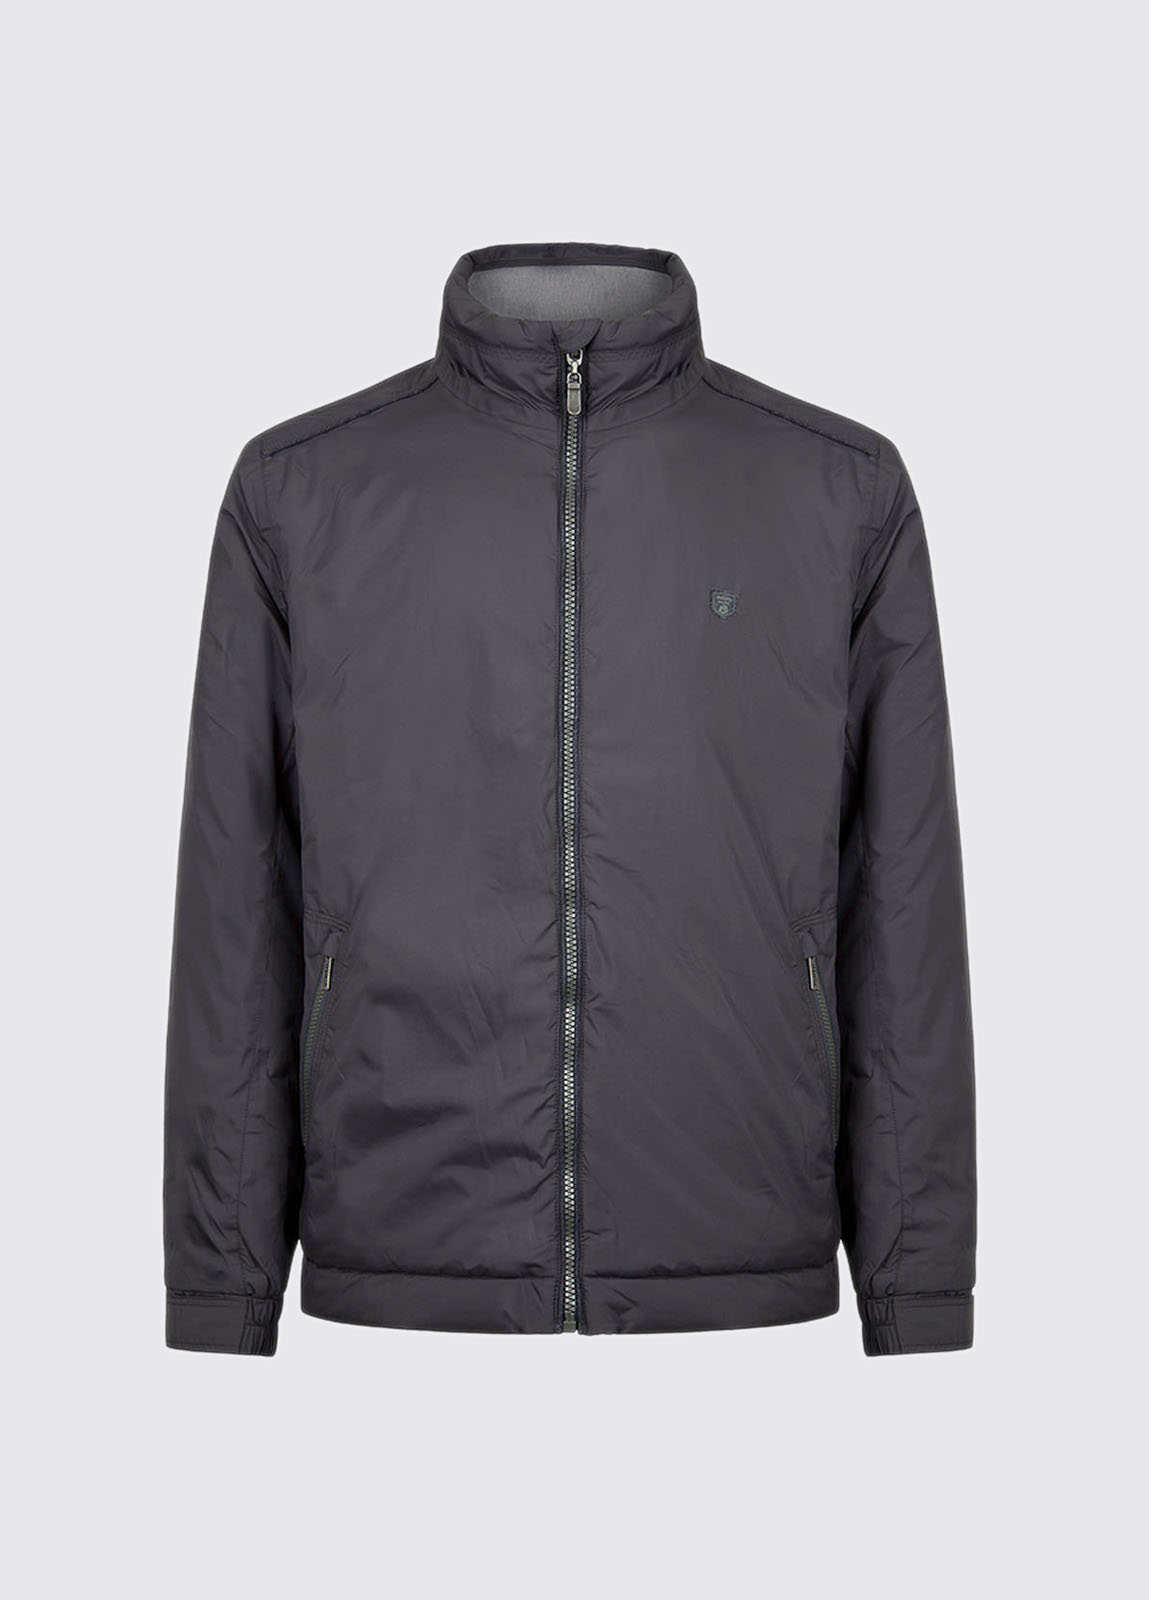 Starboard lightweight jacket - Graphite